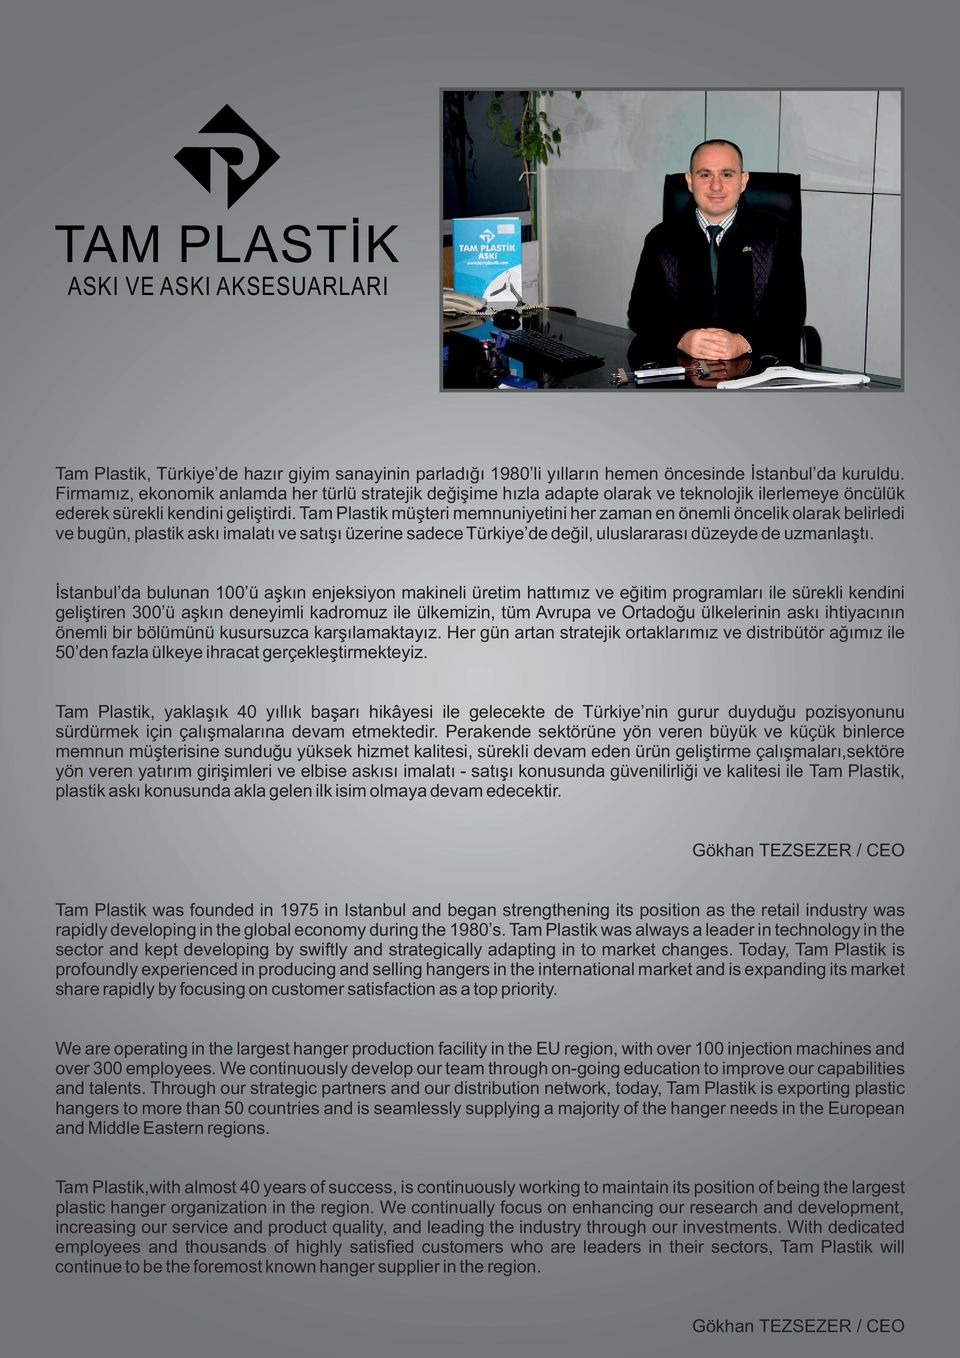 Tam Plastik müşteri memnuniyetini her zaman en önemli öncelik olarak belirledi ve bugün, plastik askı imalatı ve satışı üzerine sadece Türkiye de değil, uluslararası düzeyde de uzmanlaştı.